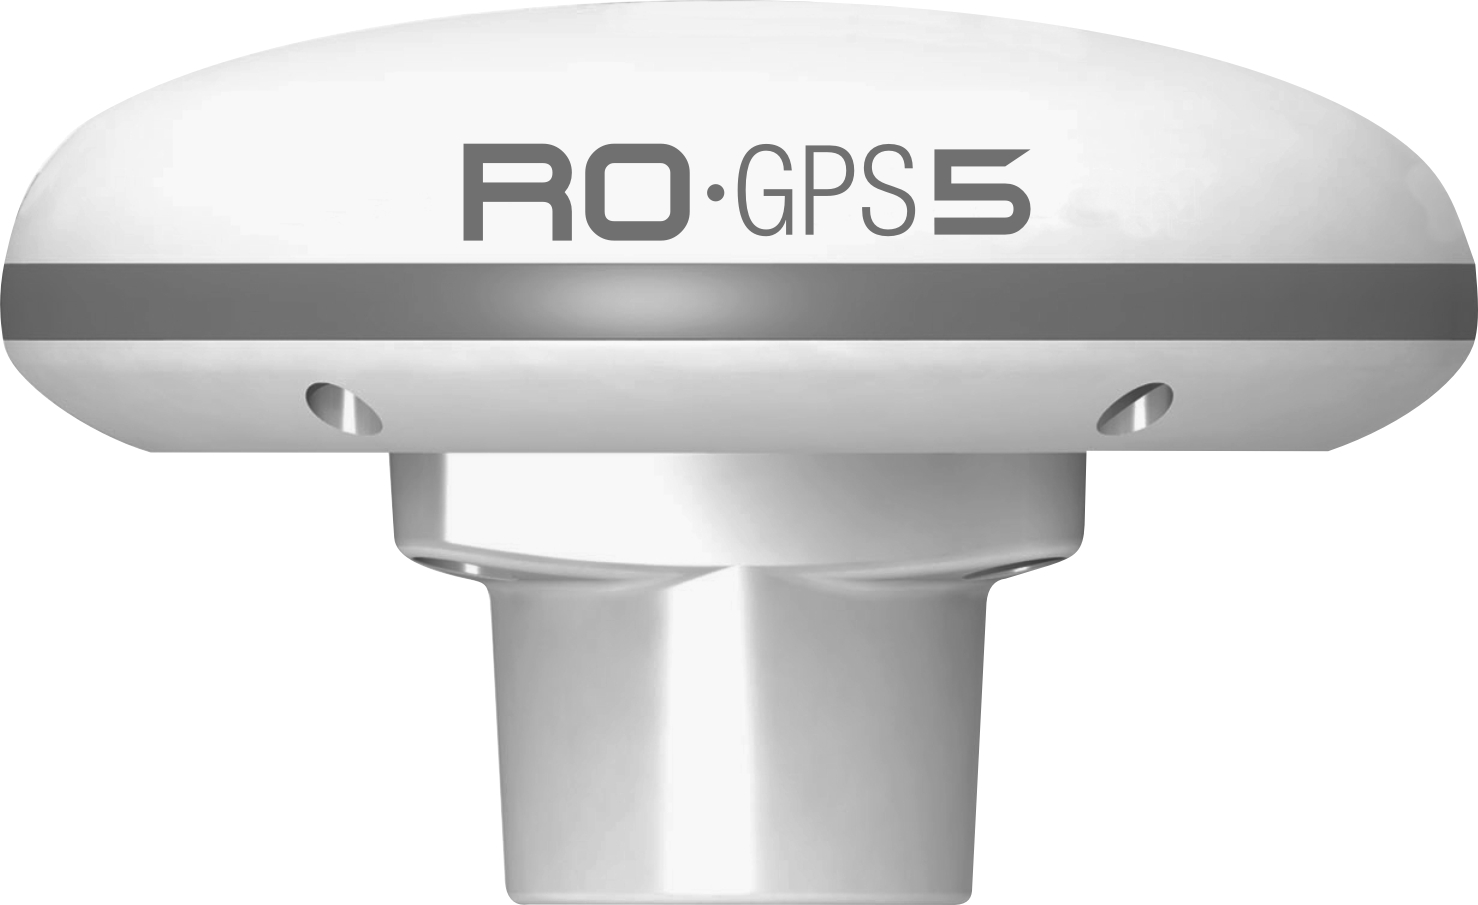 Antenas y sensores GPS